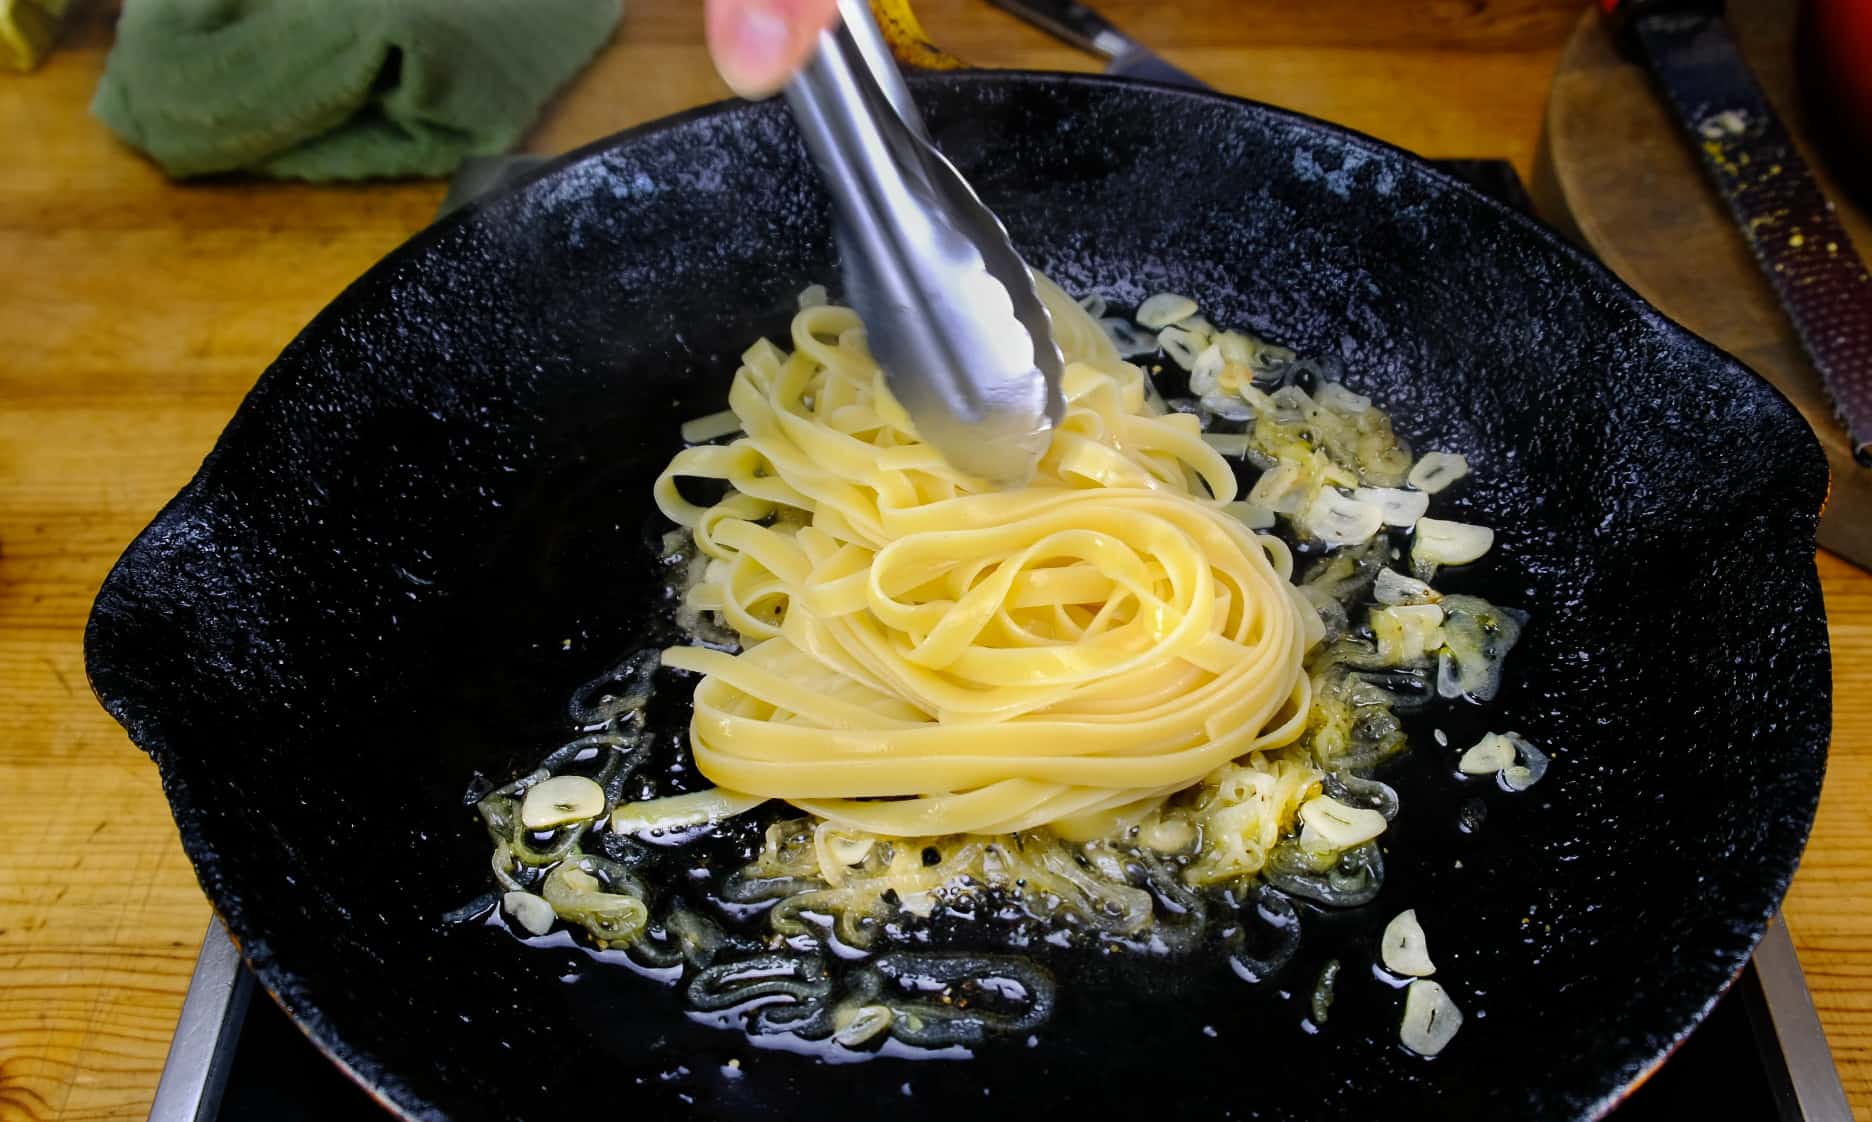 Adding the pasta